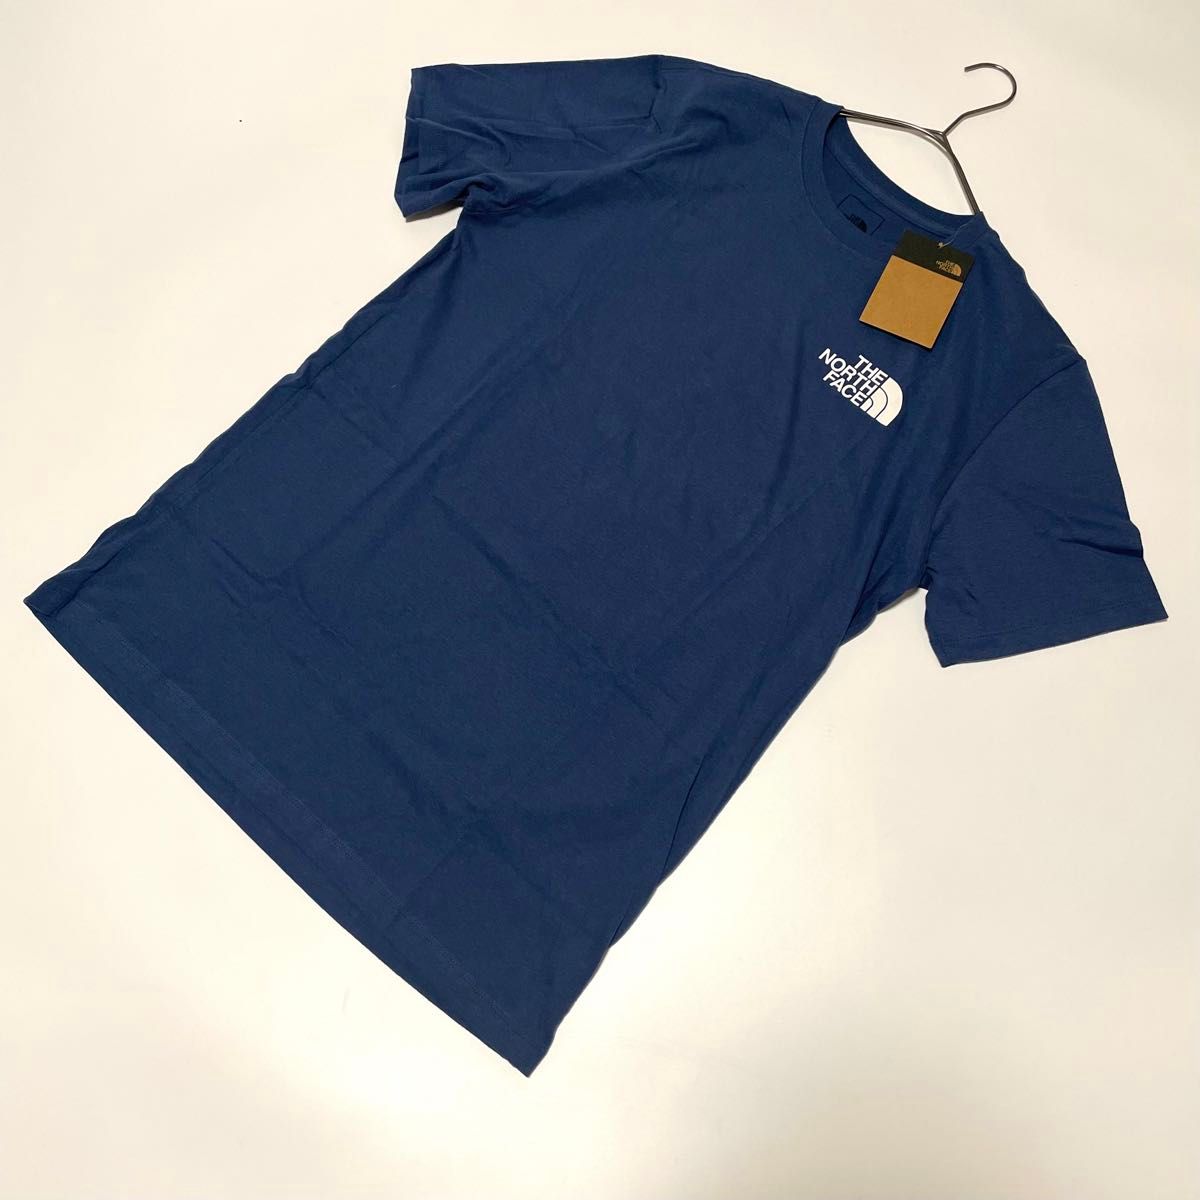 新品未使用 US-M ノースフェイス Tシャツ 半袖 グラフィック プリント ハーフドーム 登山 SHADY BLUE 海外限定